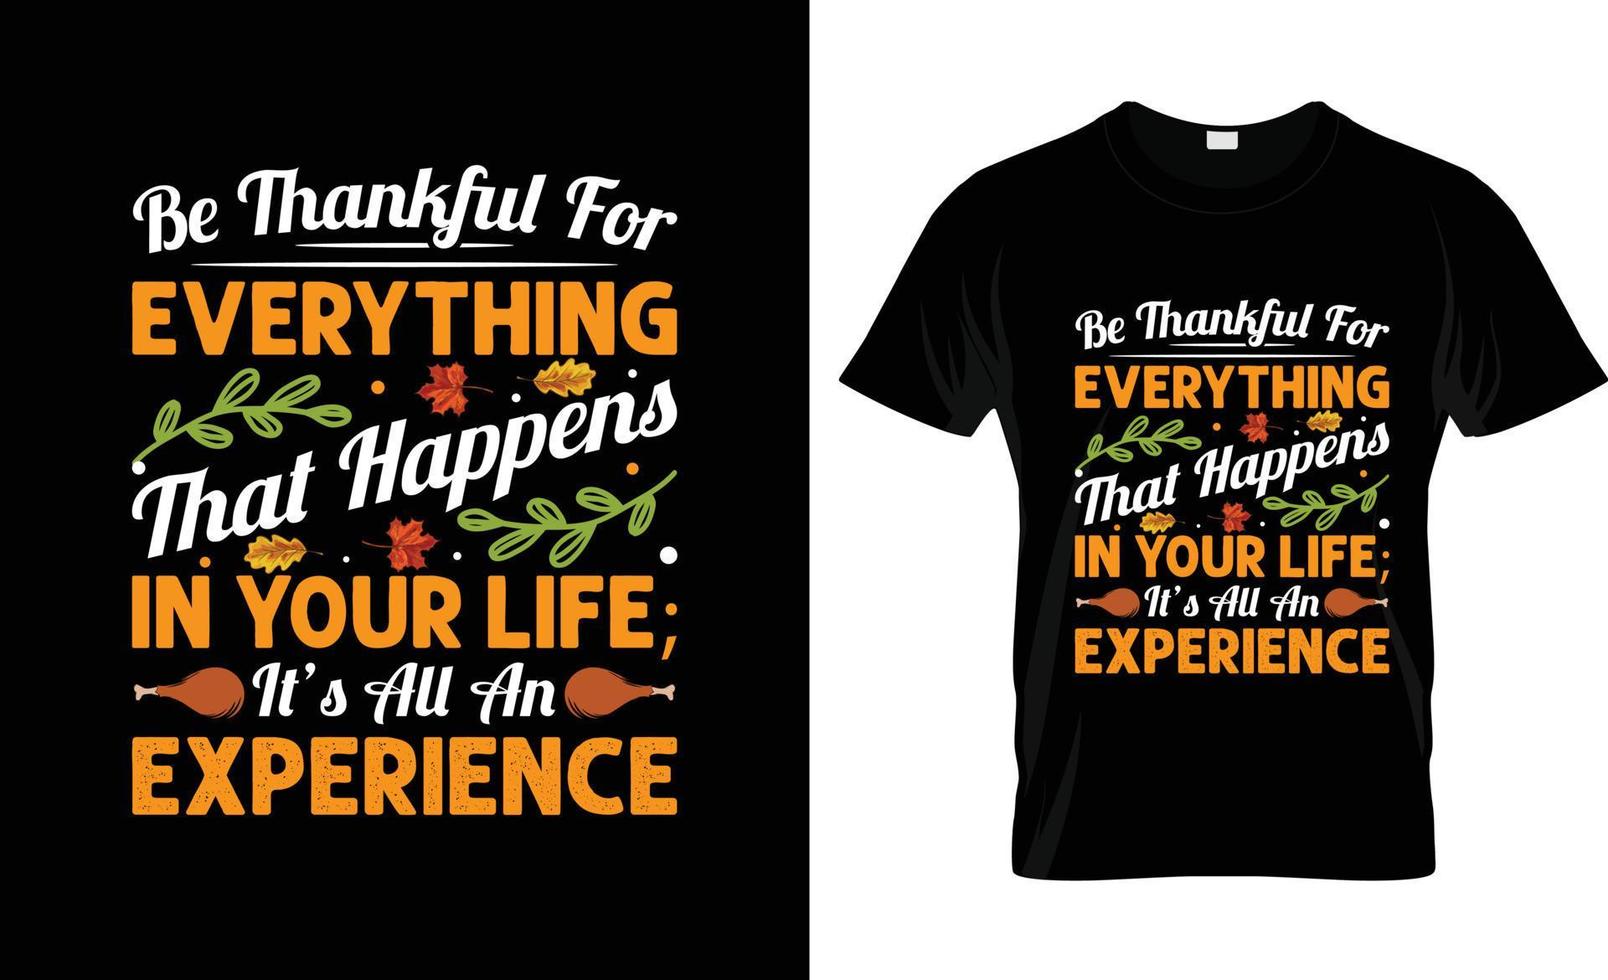 diseño de camisetas de acción de gracias, eslogan de camisetas y diseño de prendas de vestir, tipografía, impresión, vector de acción de gracias ilustración de acción de gracias